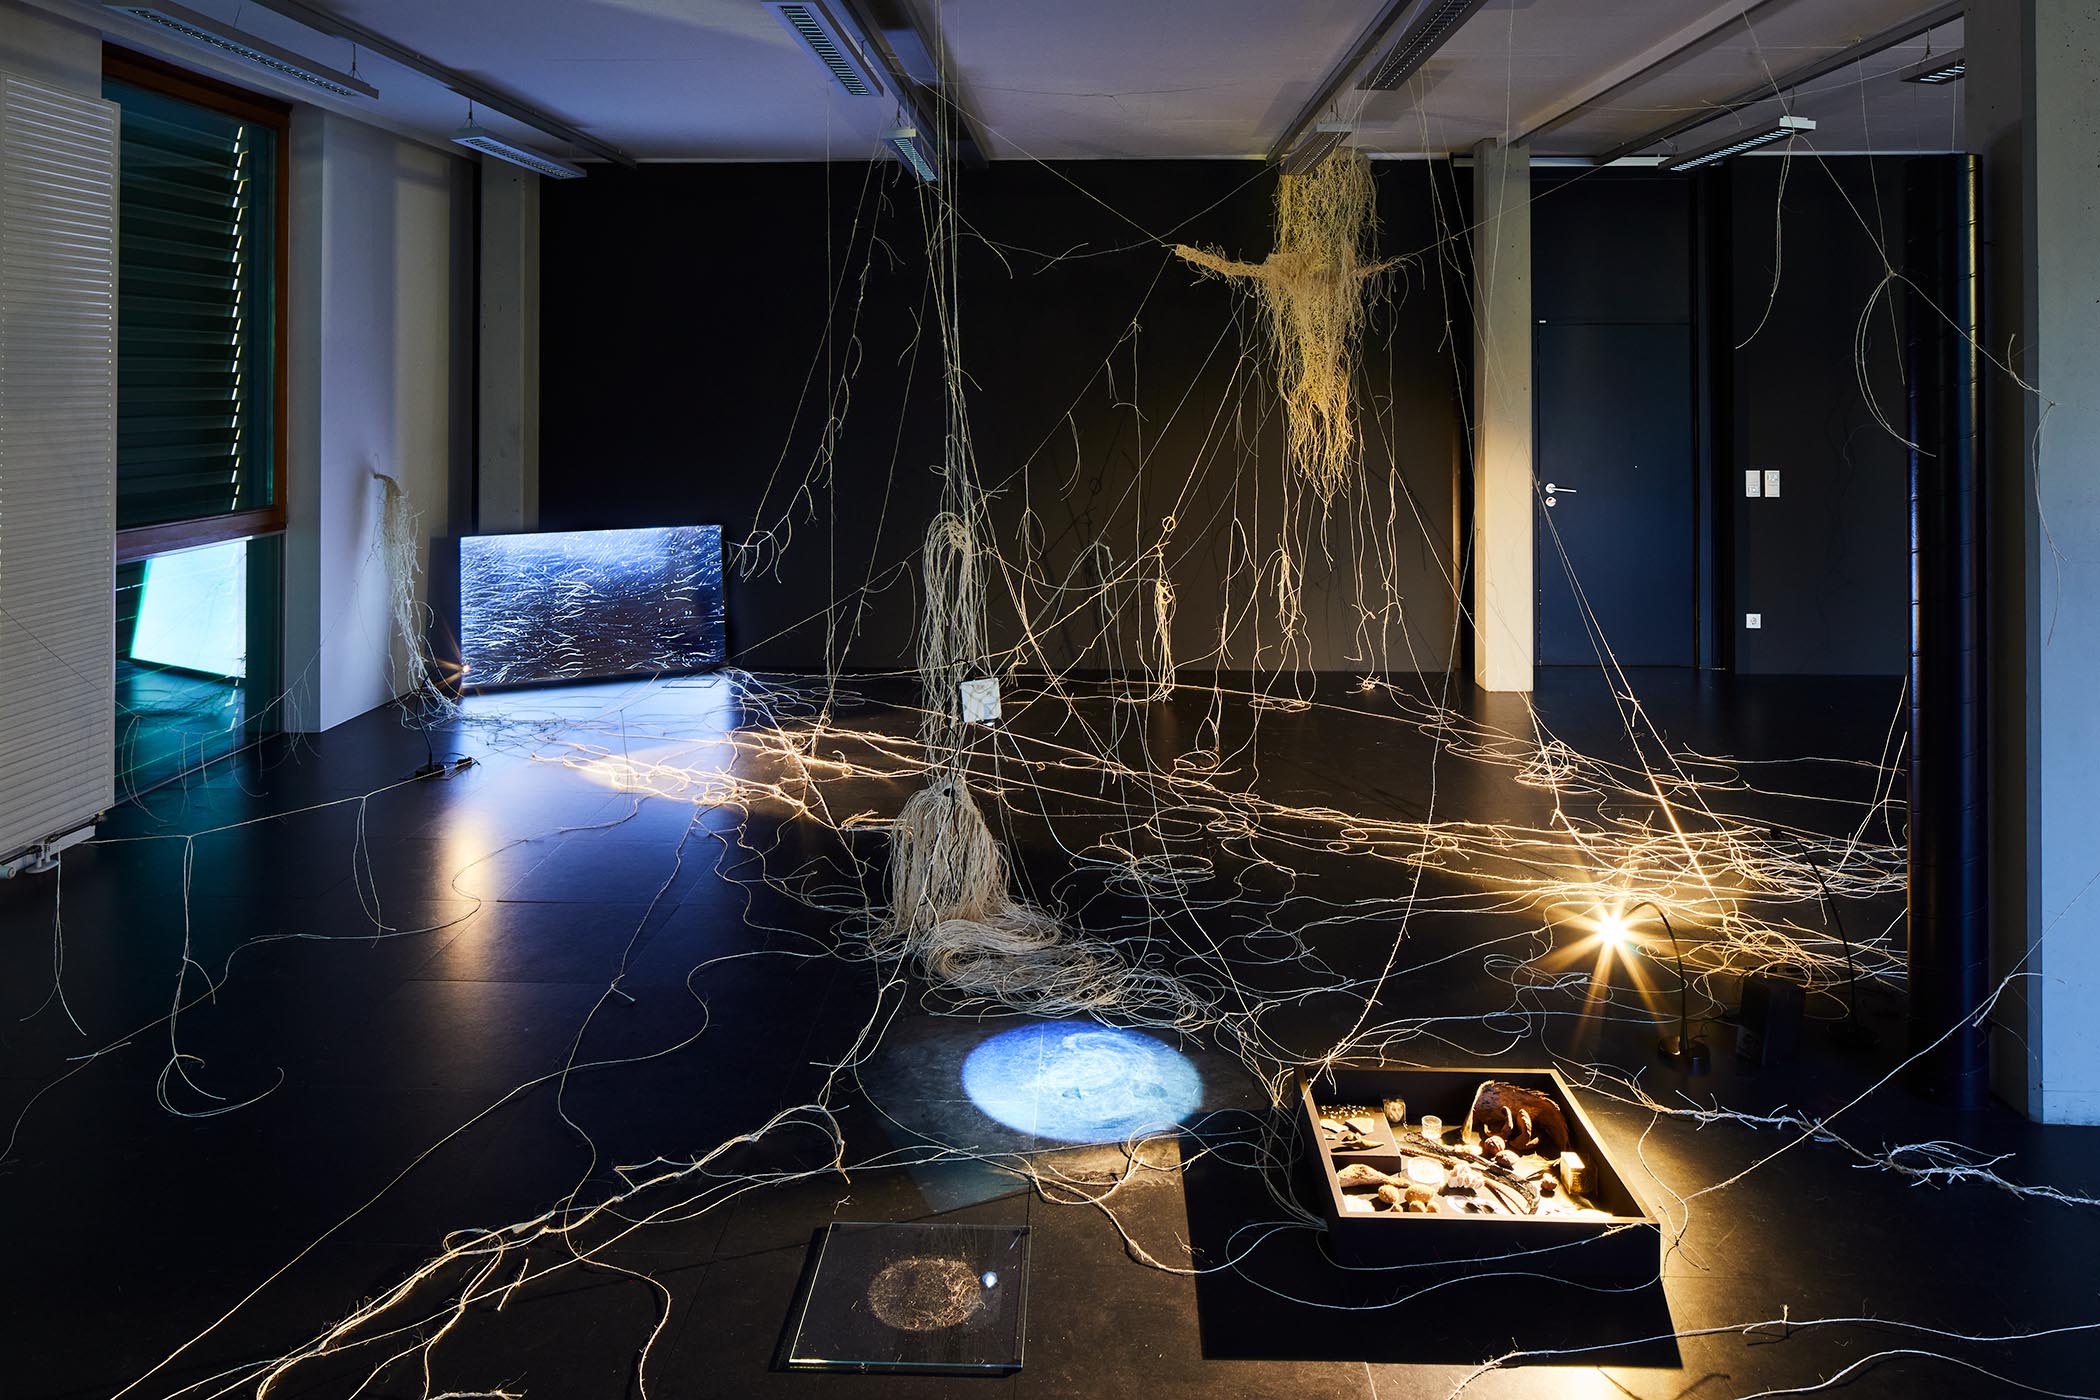 Interbeing, Installation im Kunstraum Lakeside, Klagenfurt, 2022. Foto: ©Johannes Puch